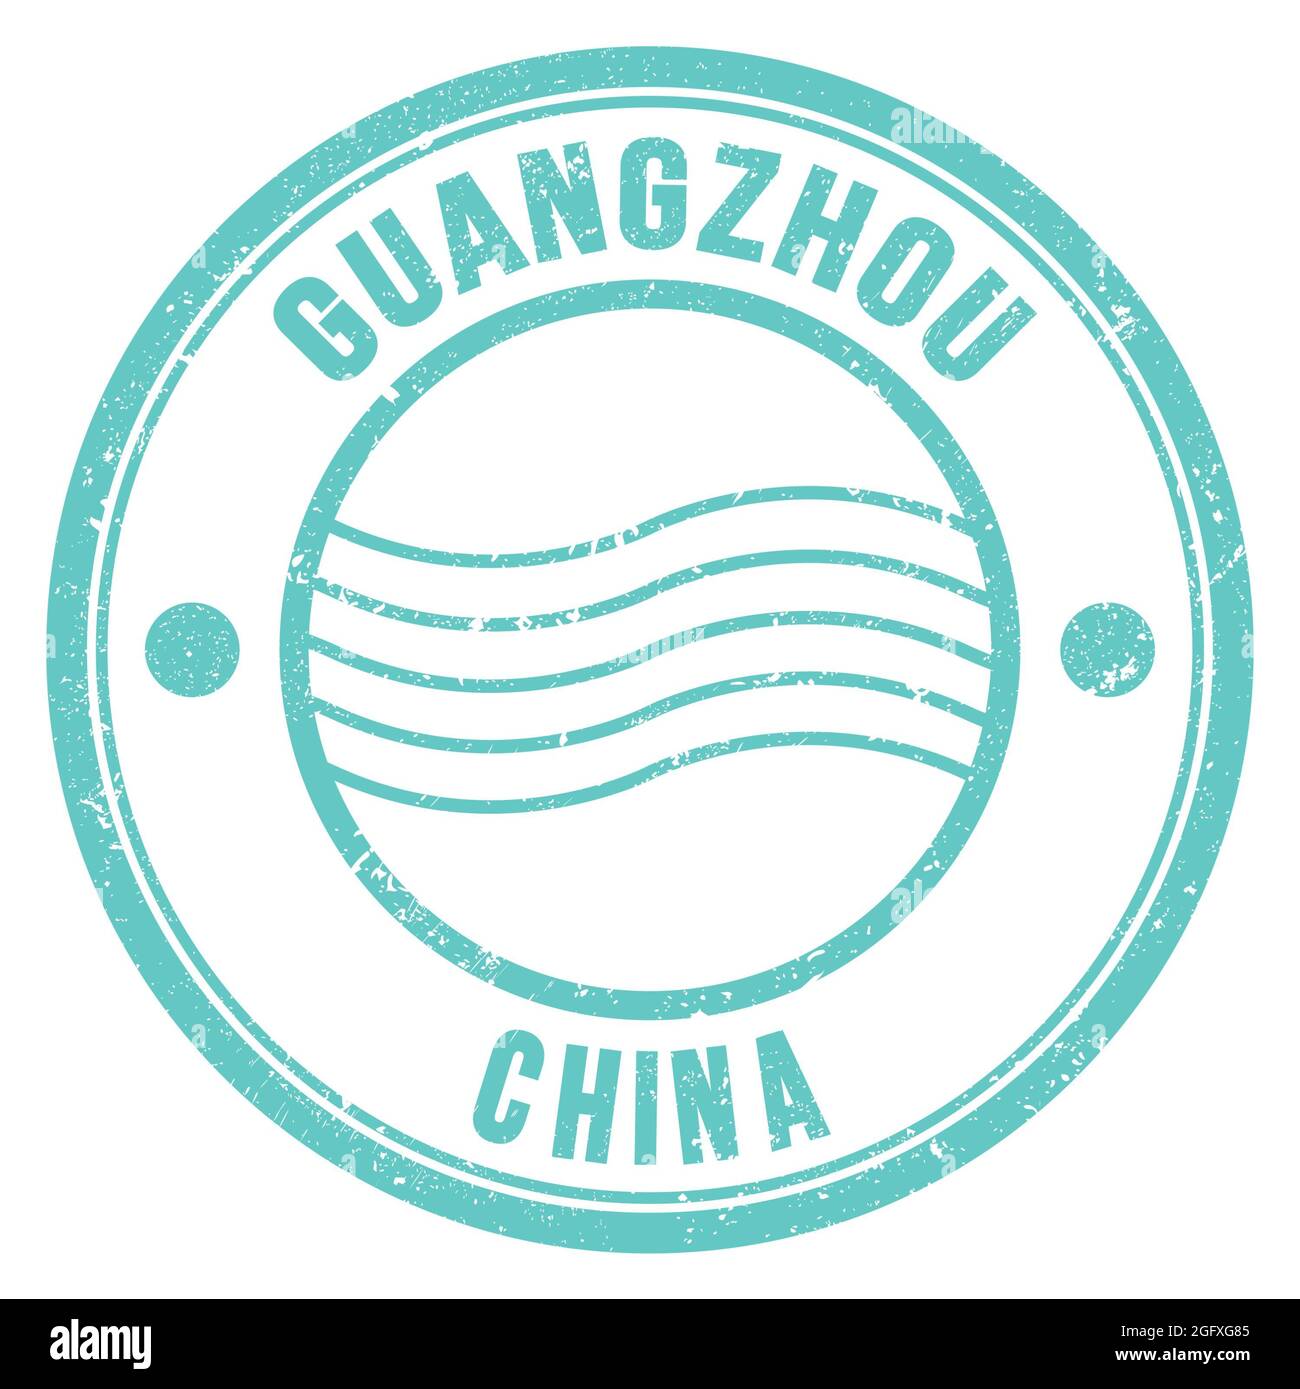 GUANGZHOU - CHINE, mots écrits sur un timbre postal rond turquoise Banque D'Images